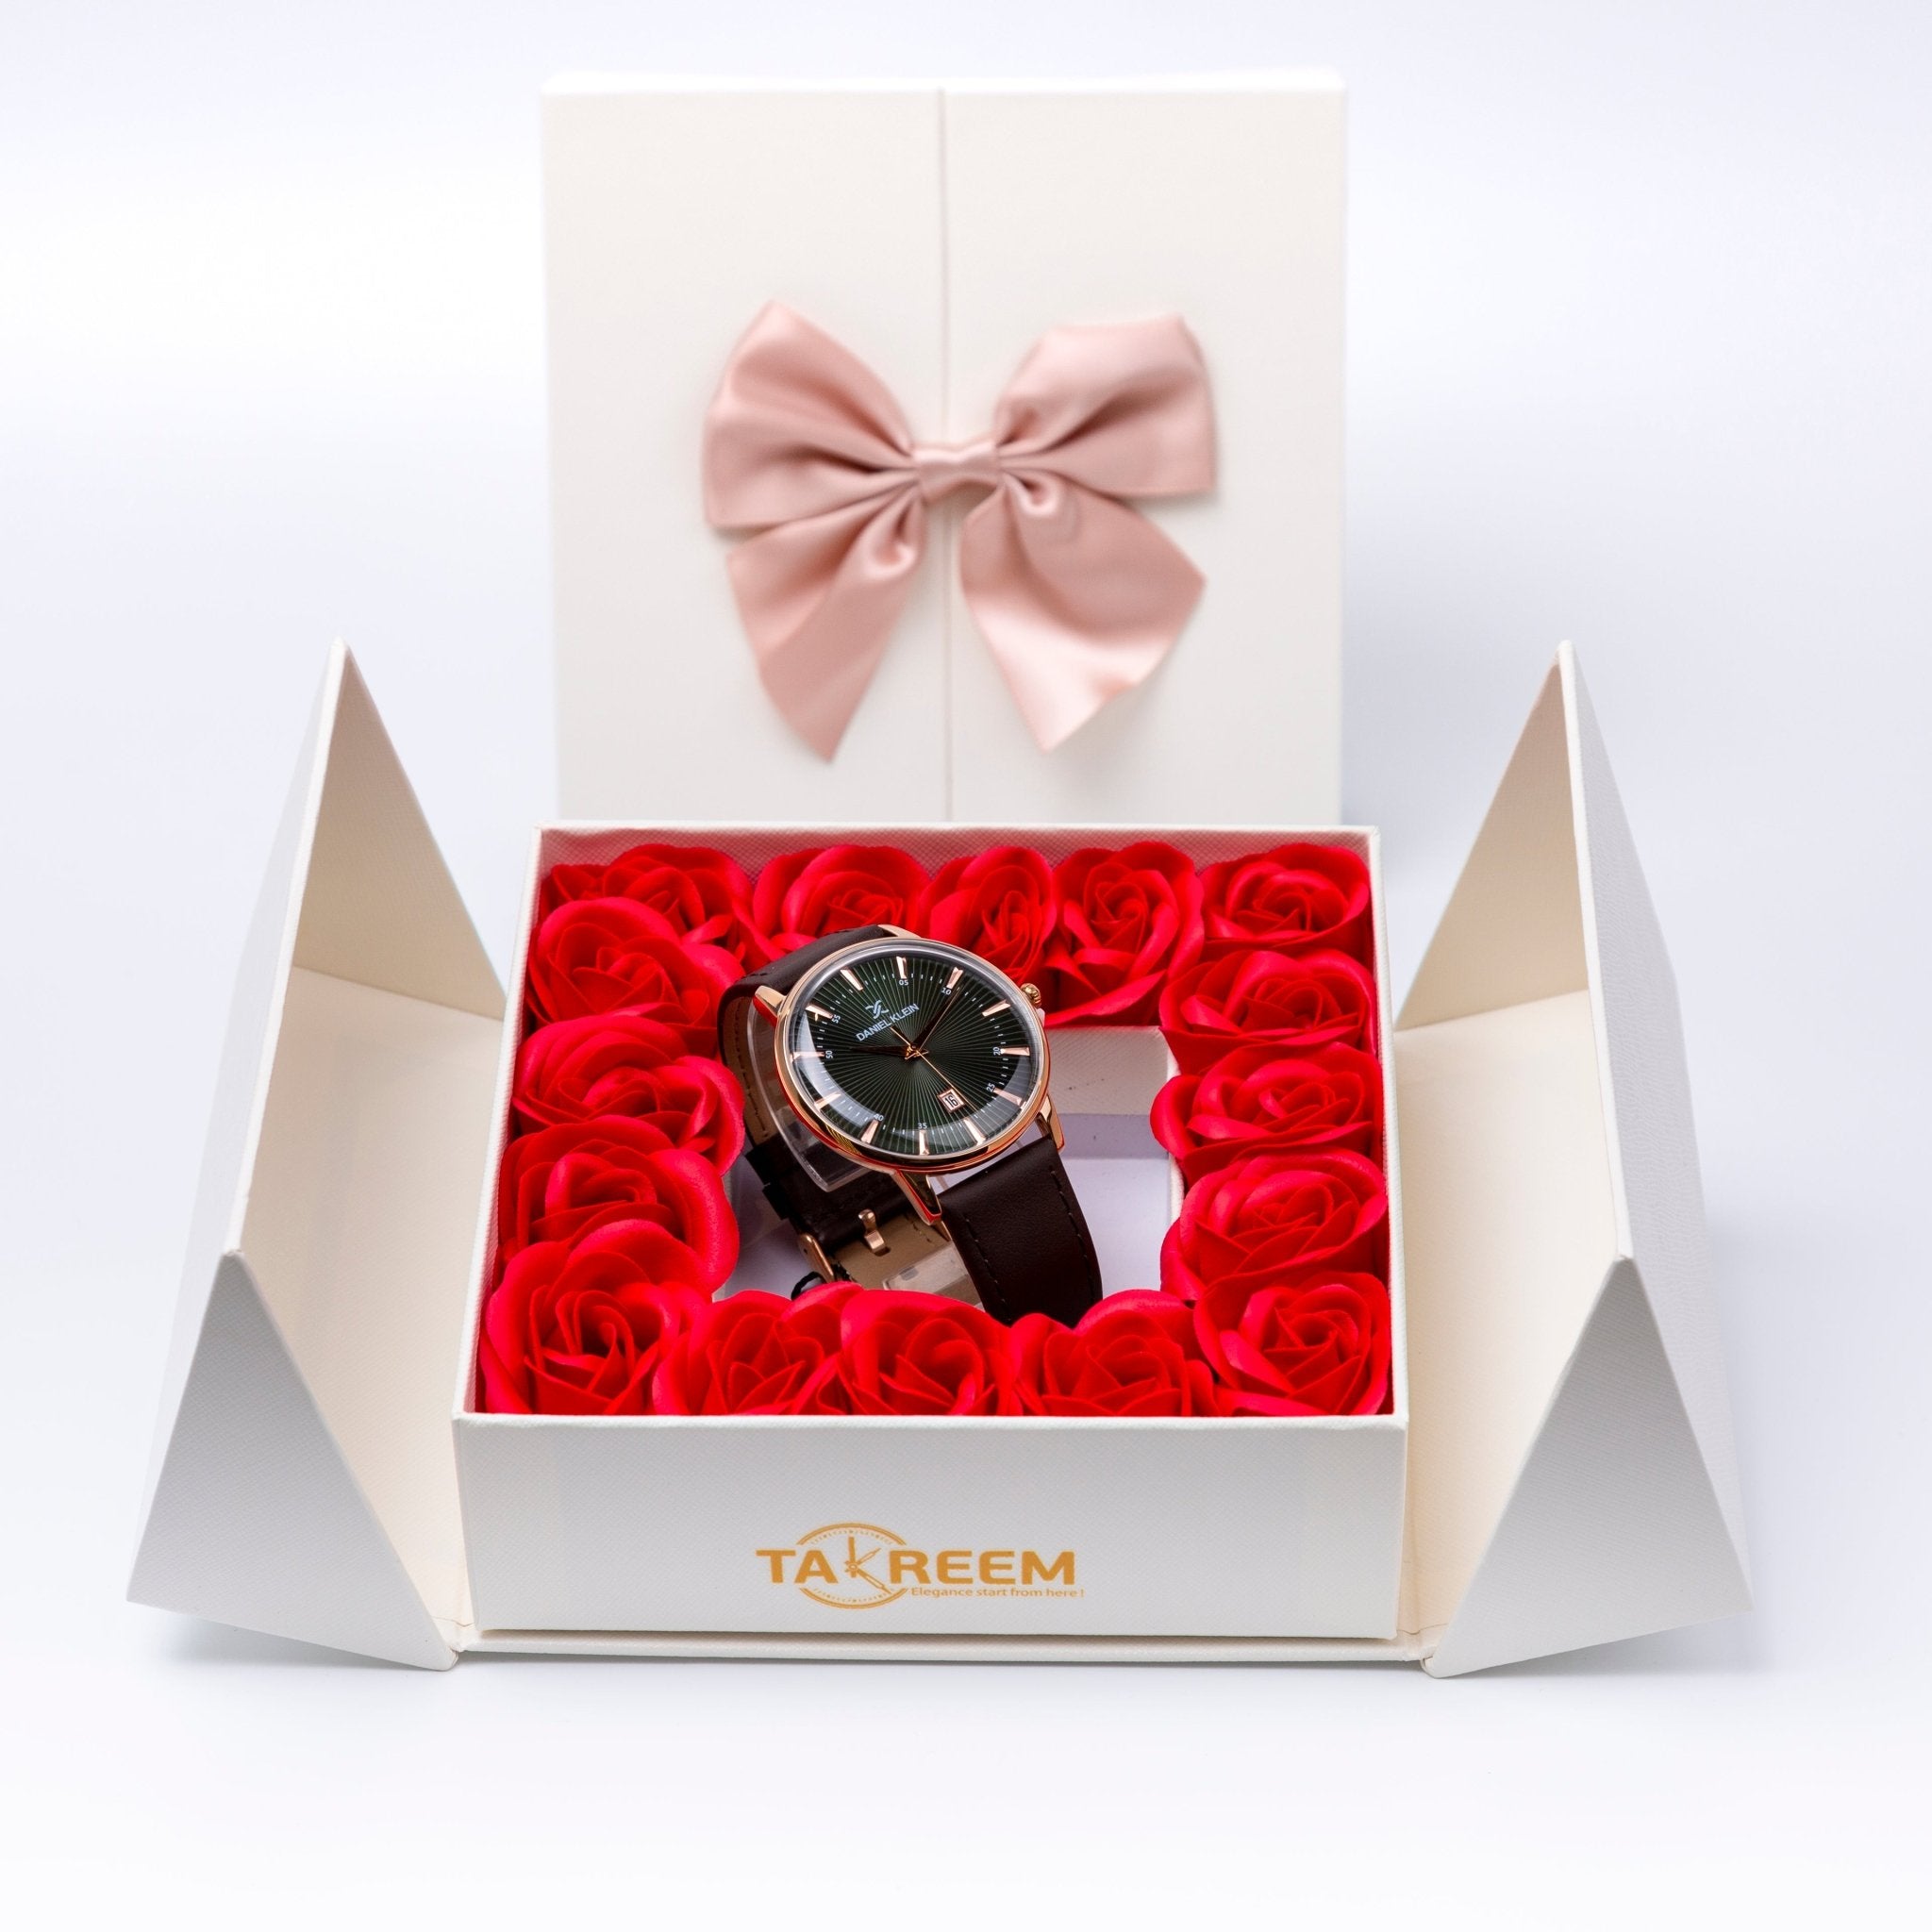 Flower Box - Gift For Men 18 - #shoFlower Box - Gift For Men 18p_name#Flower Box - Gift For Men 18Gift Boxes & TinsTakreemTakreem.joMenWatchFlower Box - Gift For Men 18 - Takreem.jo